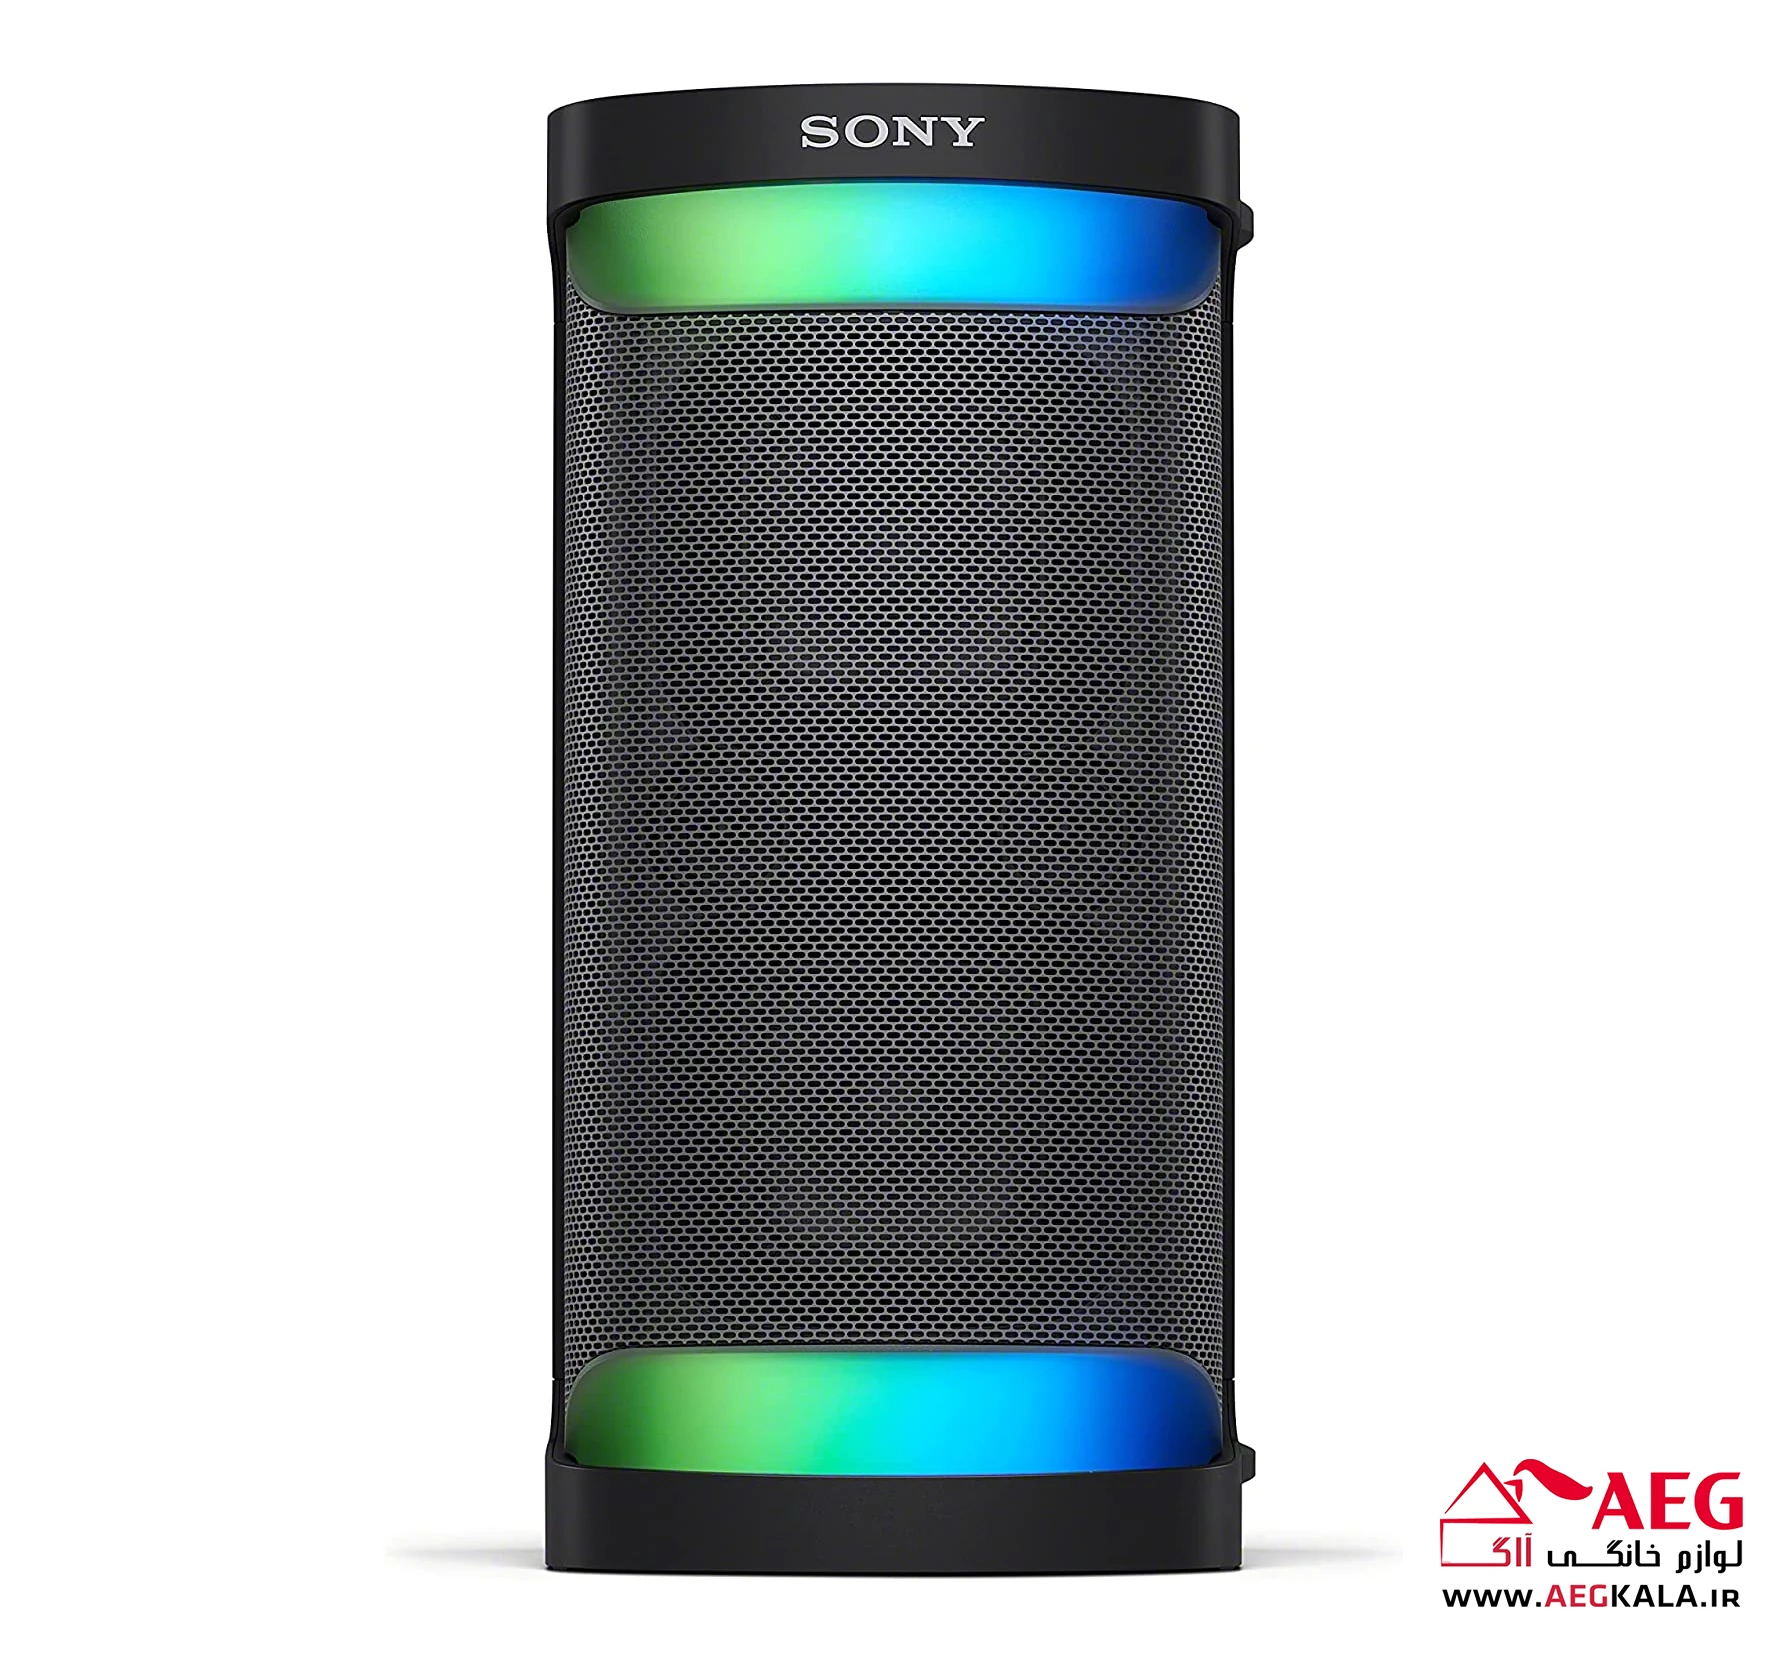 سیستم صوتی شارژِی سونی 120 وات Sony SRS-XP500